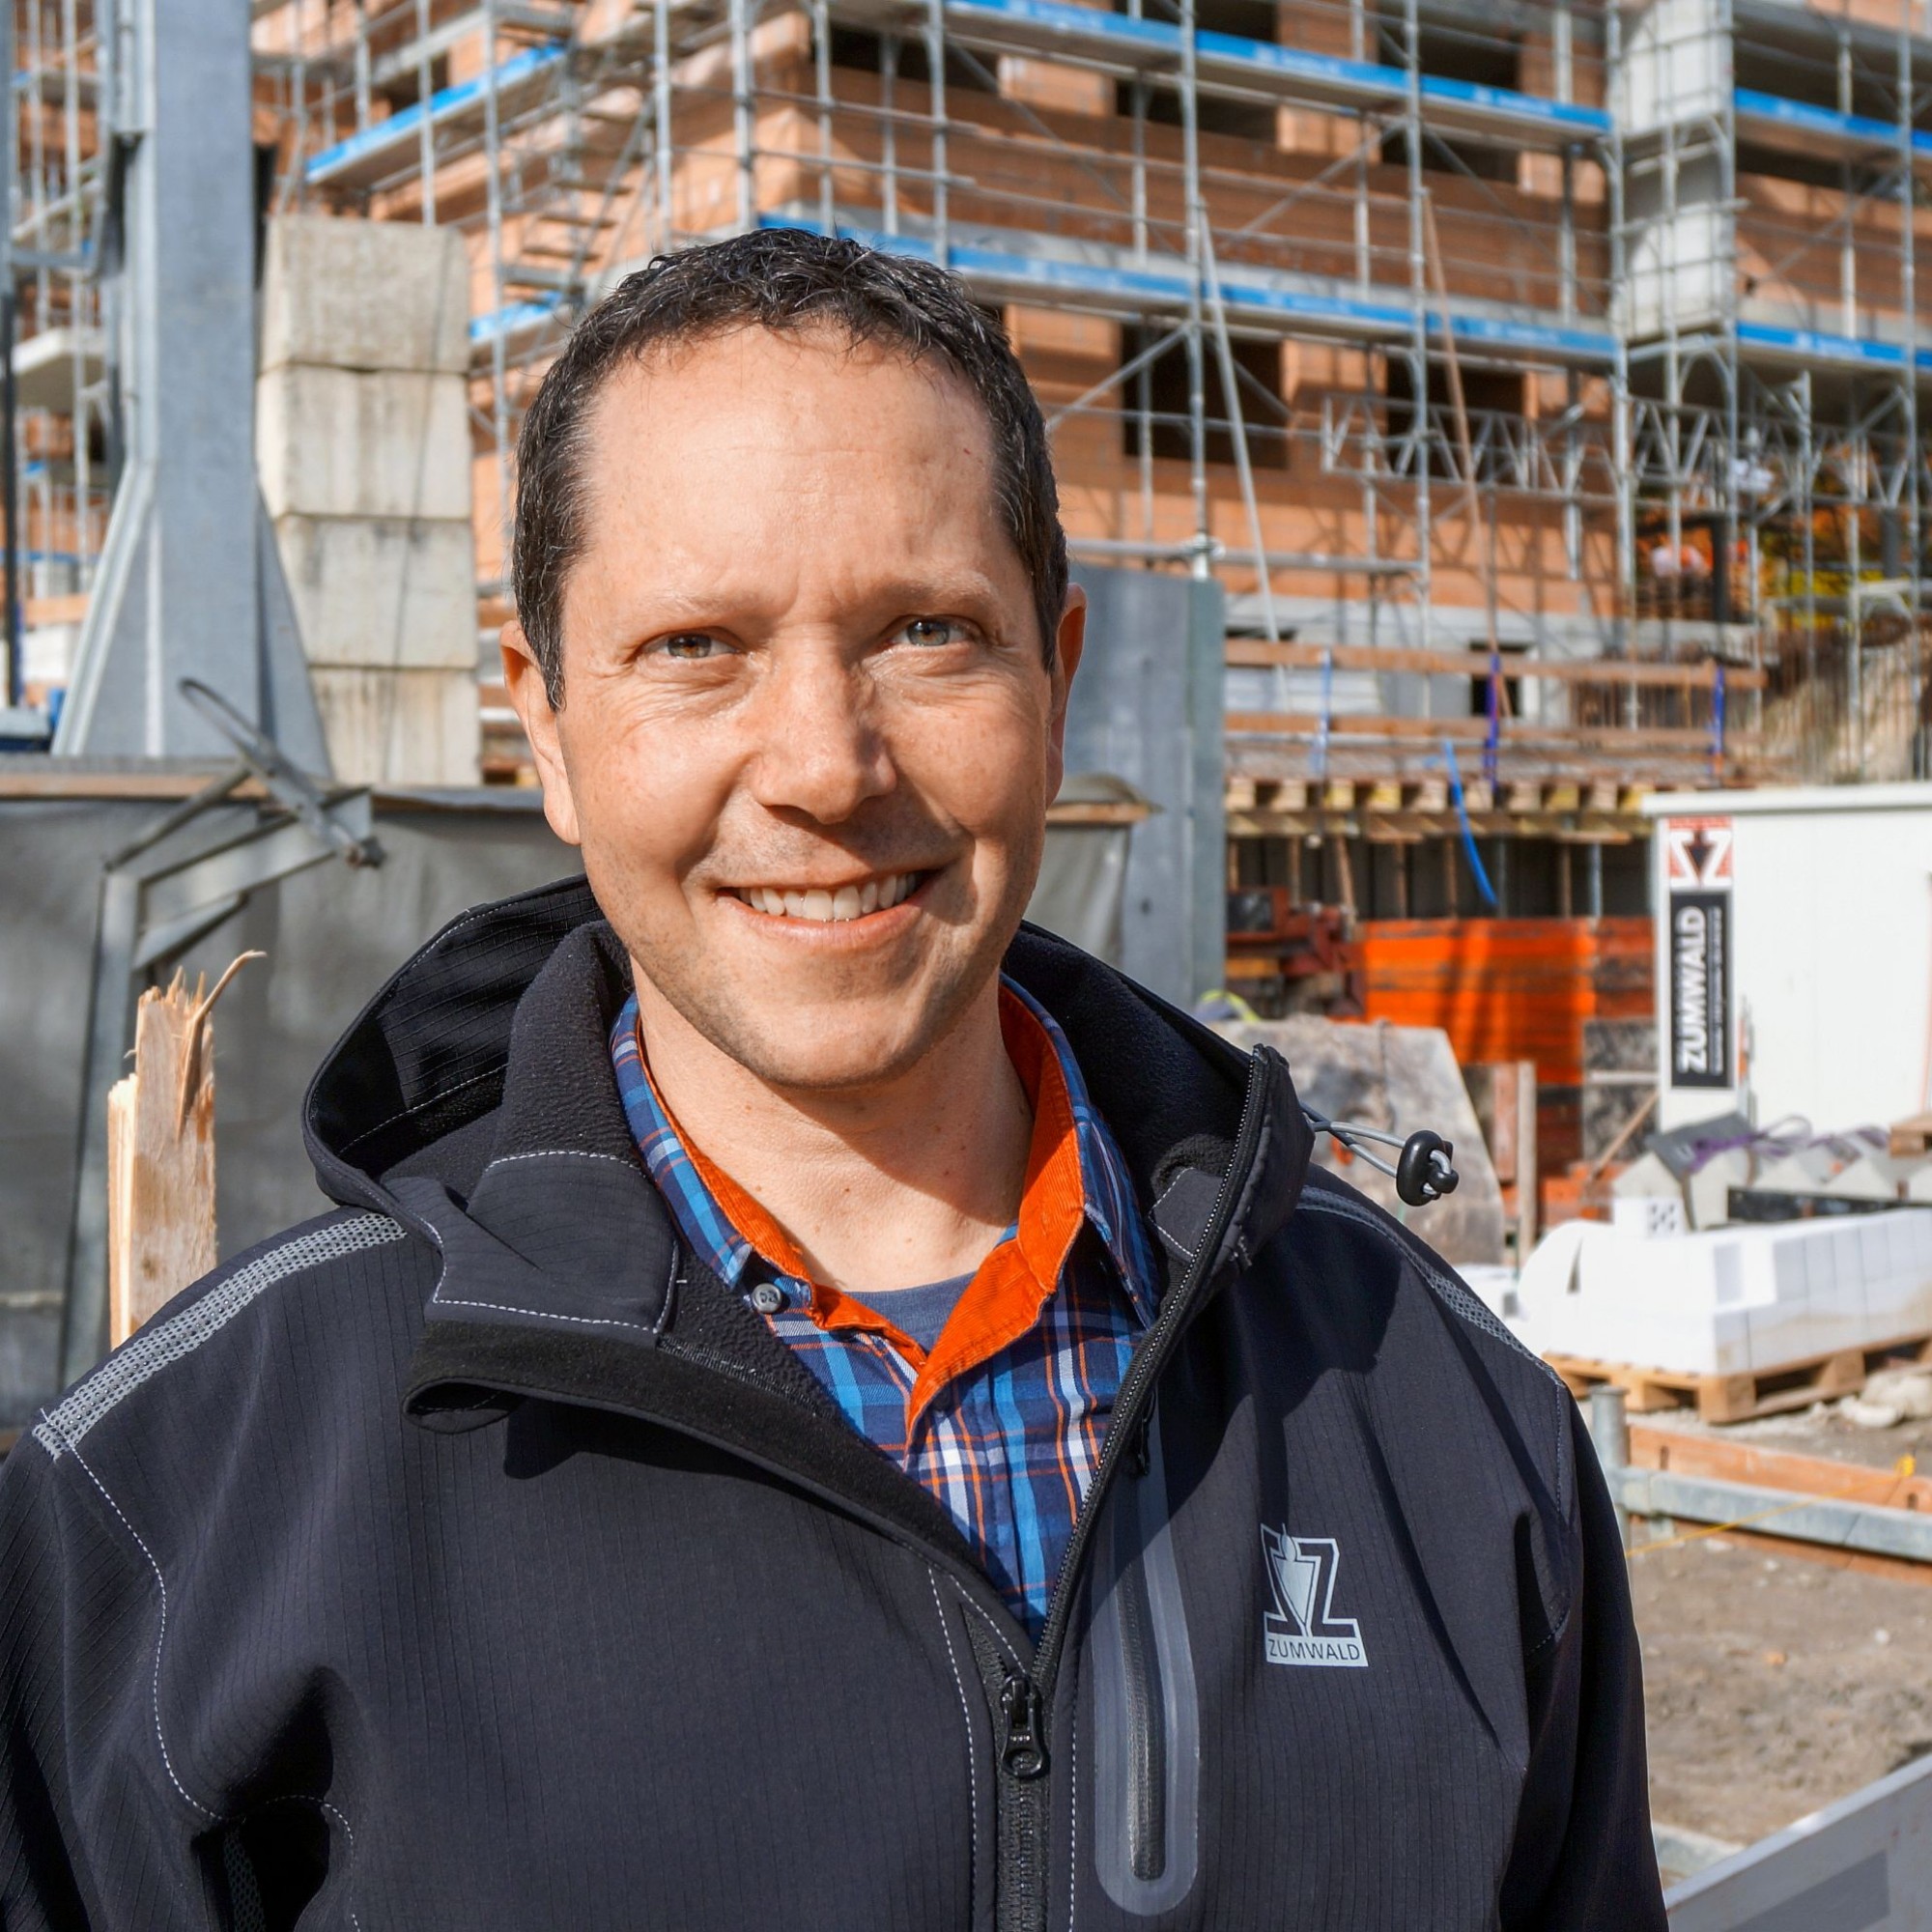 Als selbstständiger Bauunternehmer ist er glücklich: Der Deutschfreiburger Roman Zumwald leitet ein KMU mit 28 Mitarbeitern.